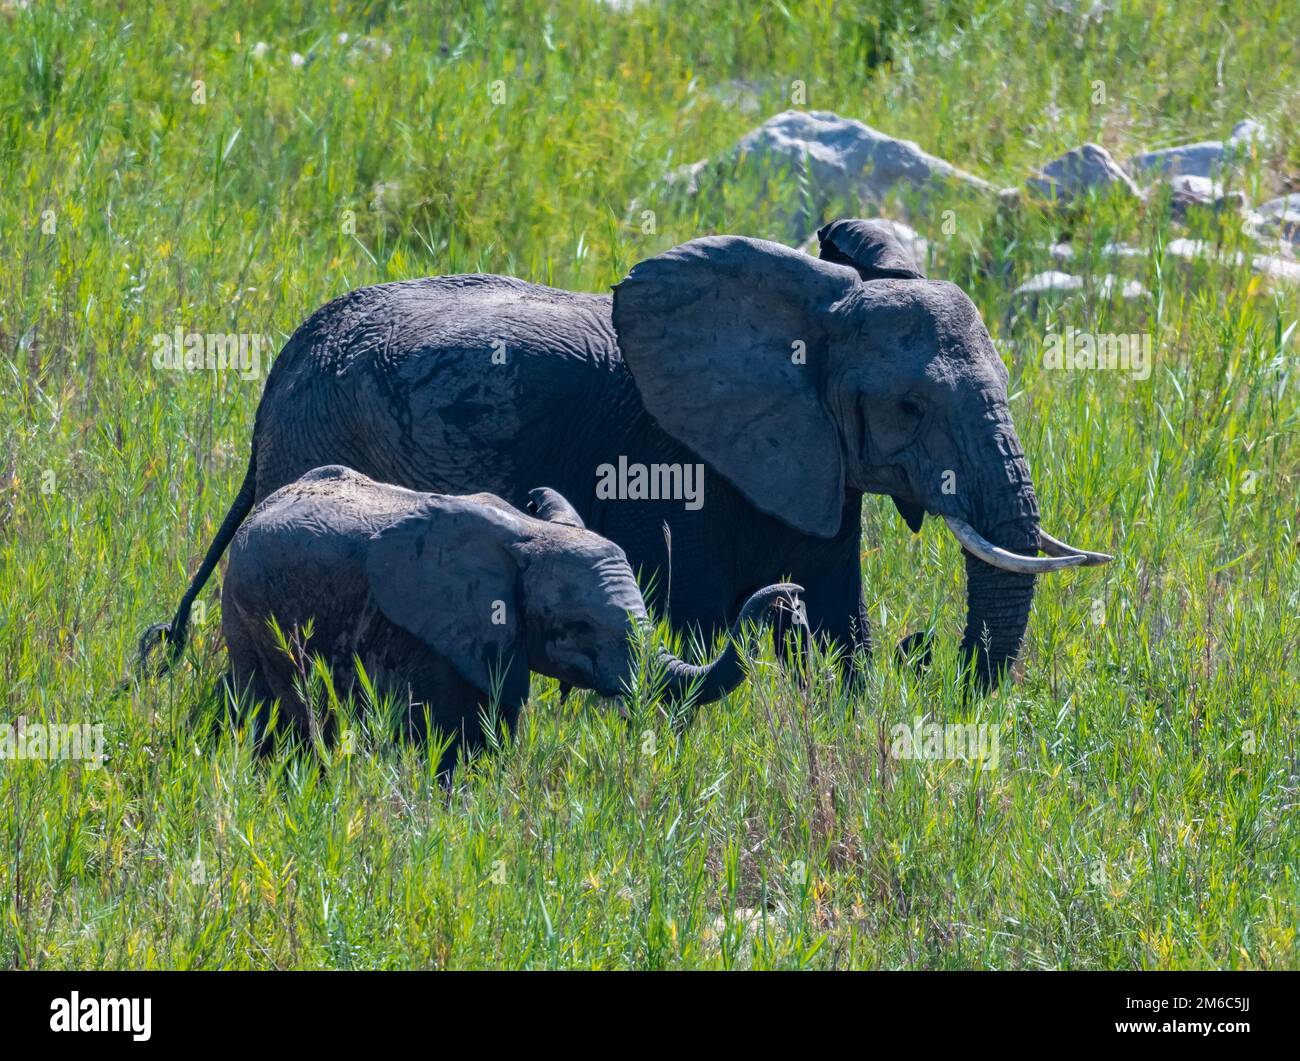 Mutter- und Baby-Elefanten (Loxodonta africana) im grünen Gras der offenen Savanne. Kruger-Nationalpark, Südafrika. Stockfoto